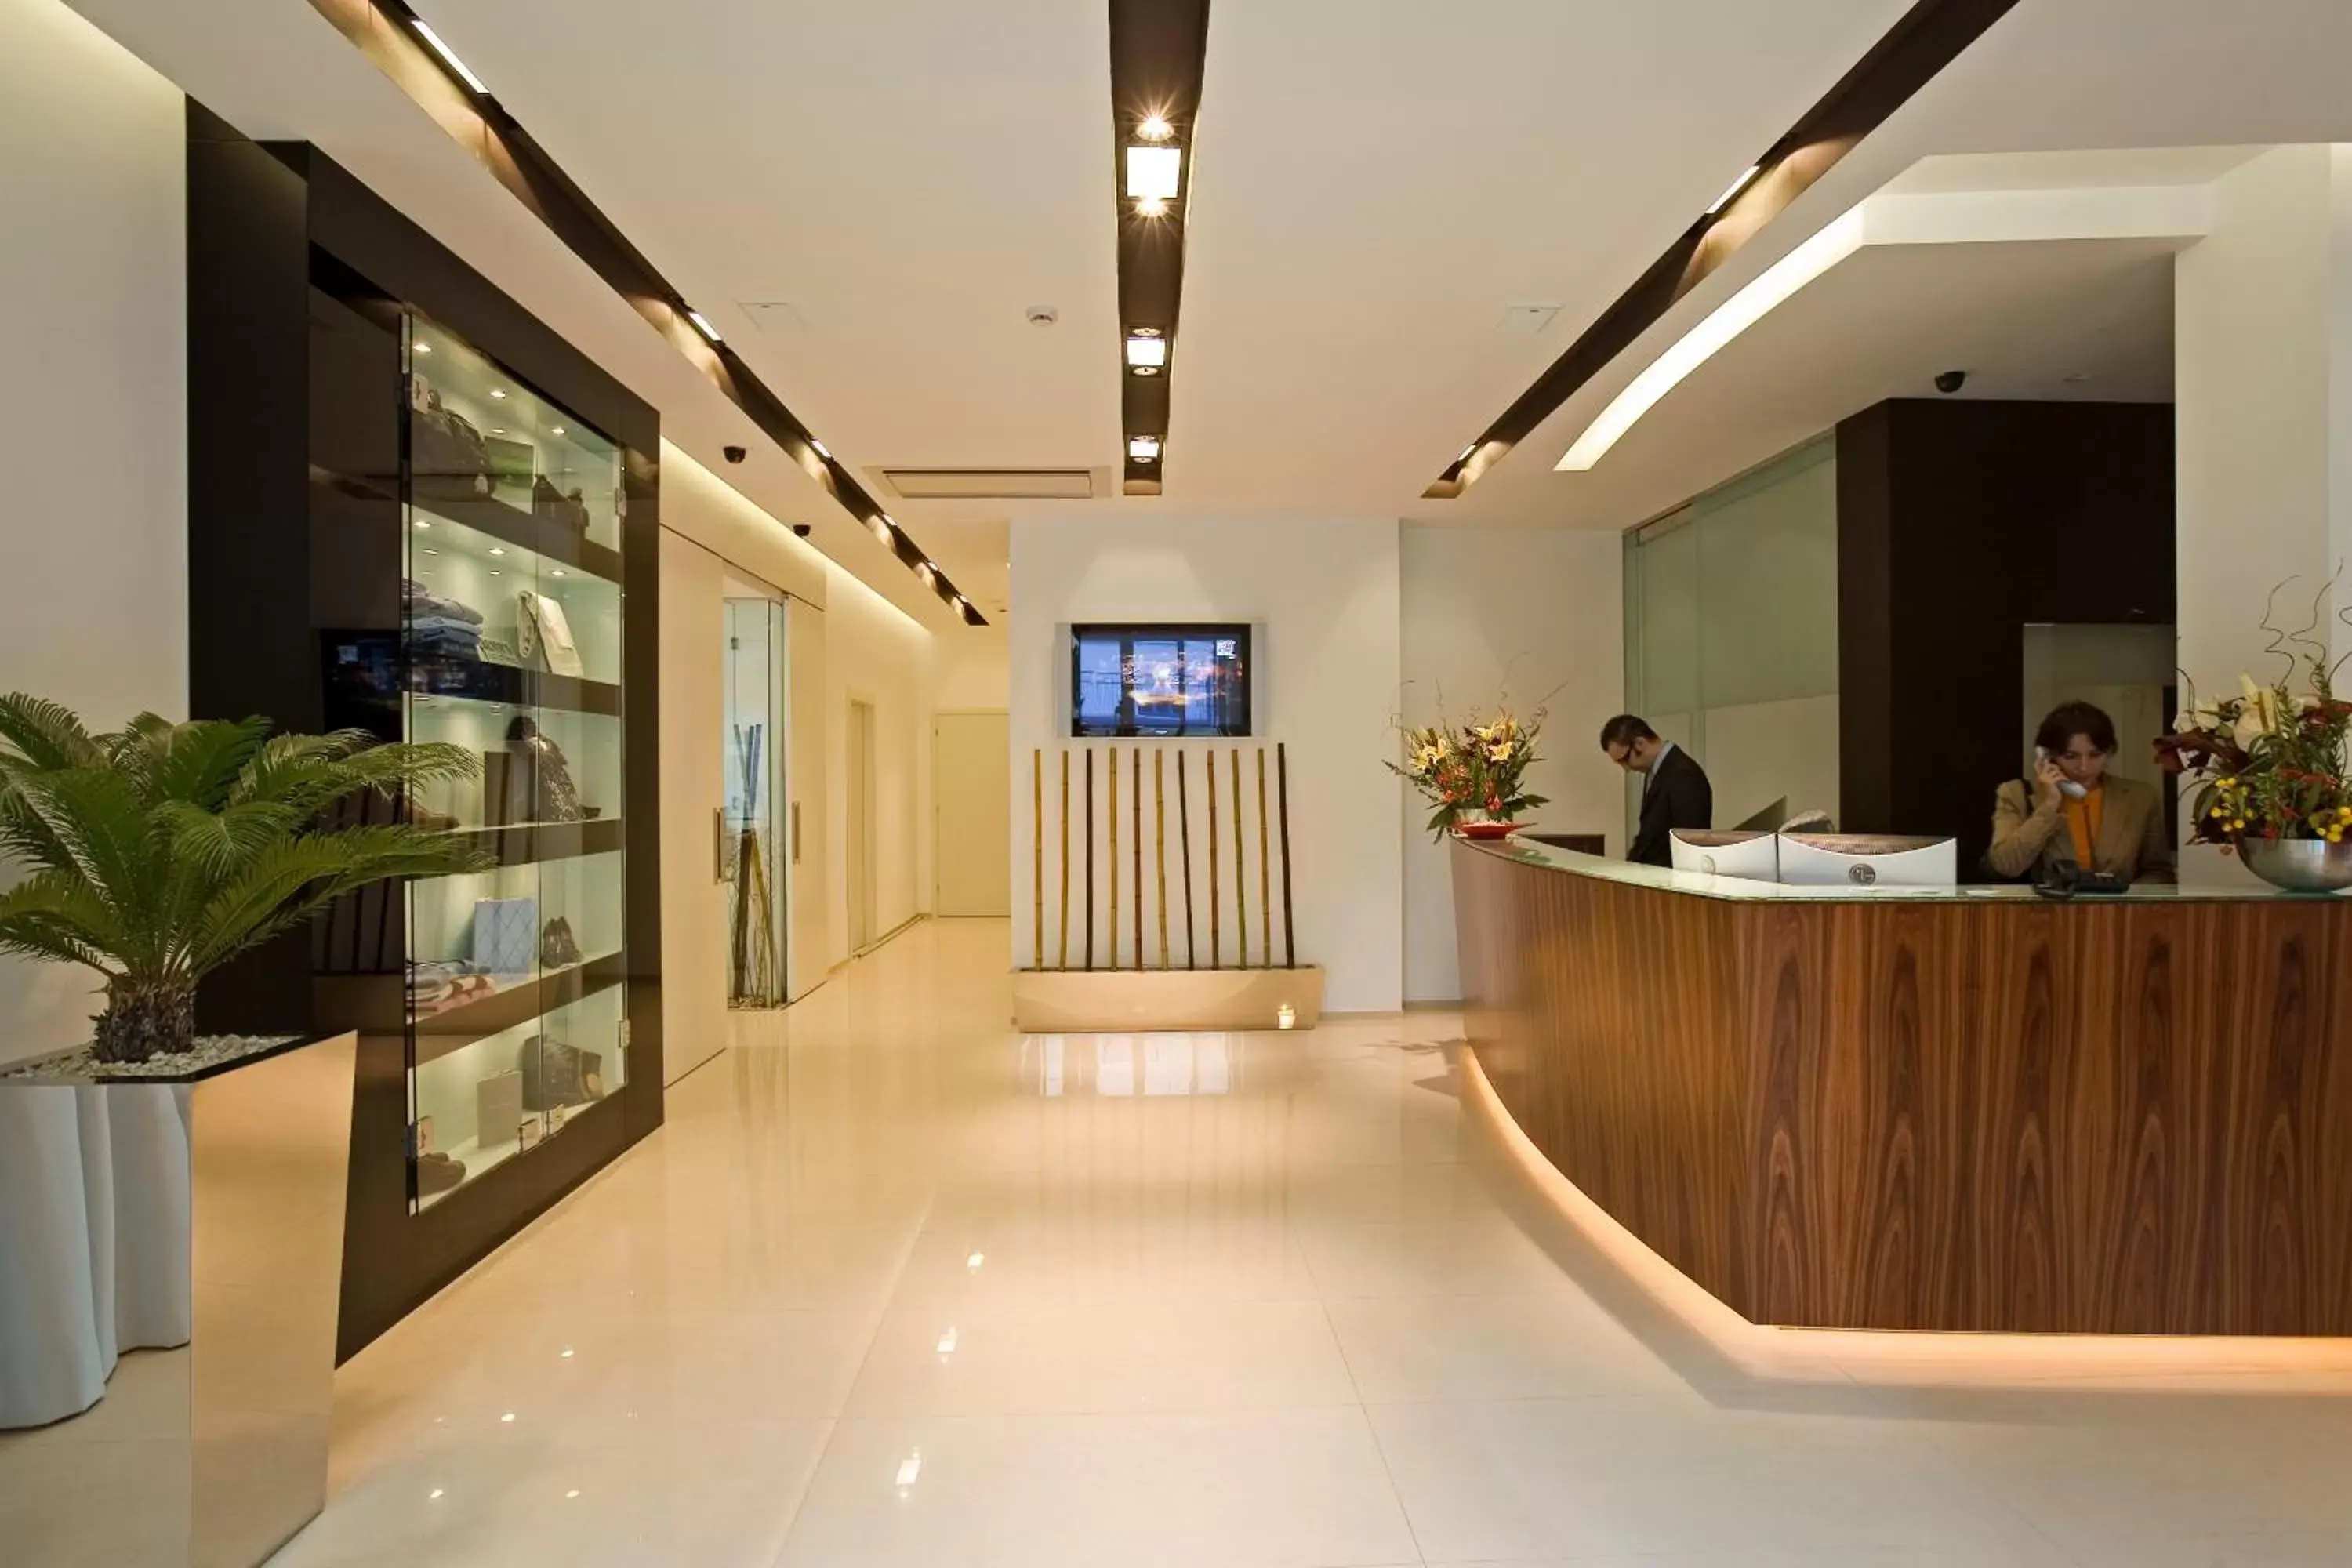 Lobby or reception, Lobby/Reception in Card International Hotel